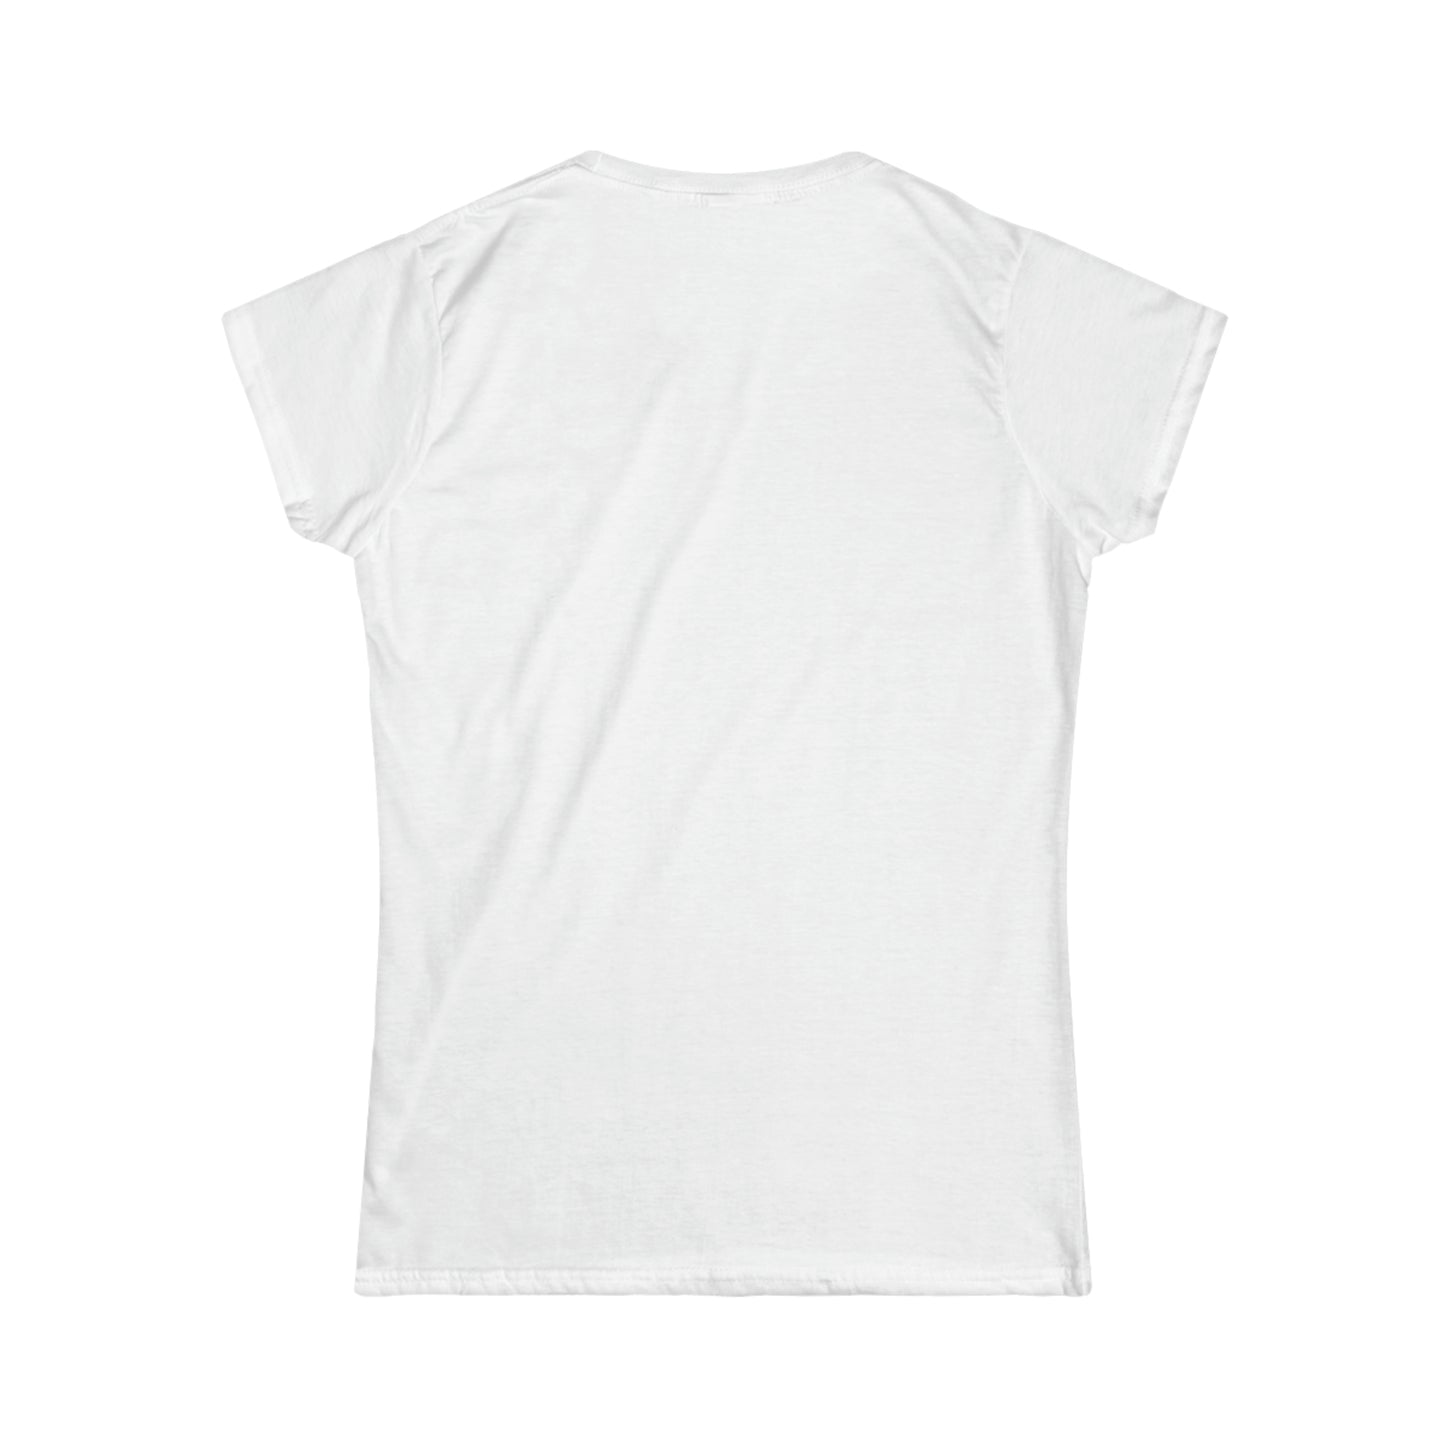 Dachshund Softstyle T-Shirt: "Treasure"